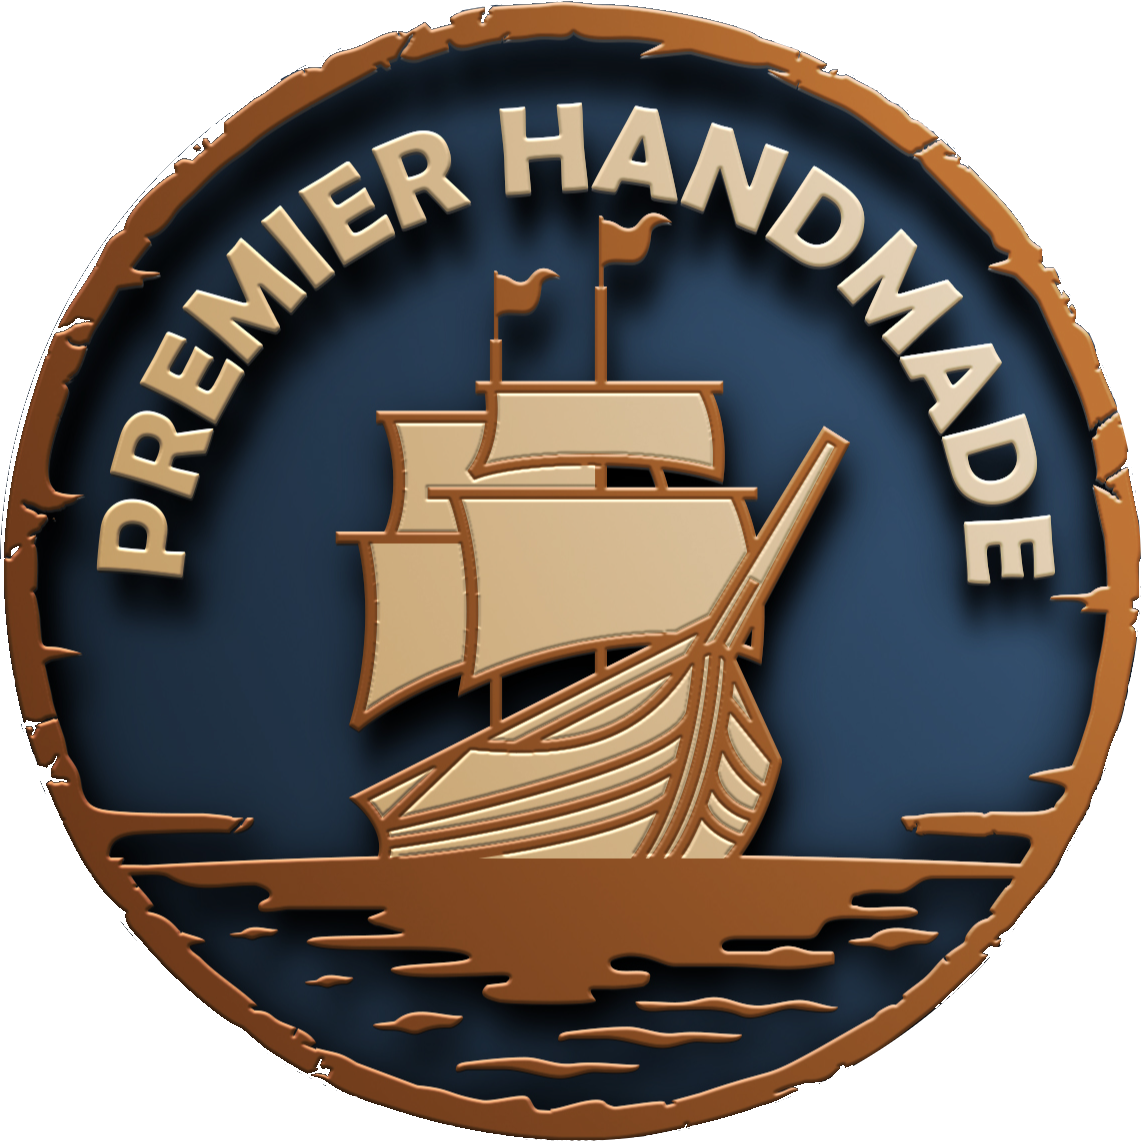 Premier Handmade